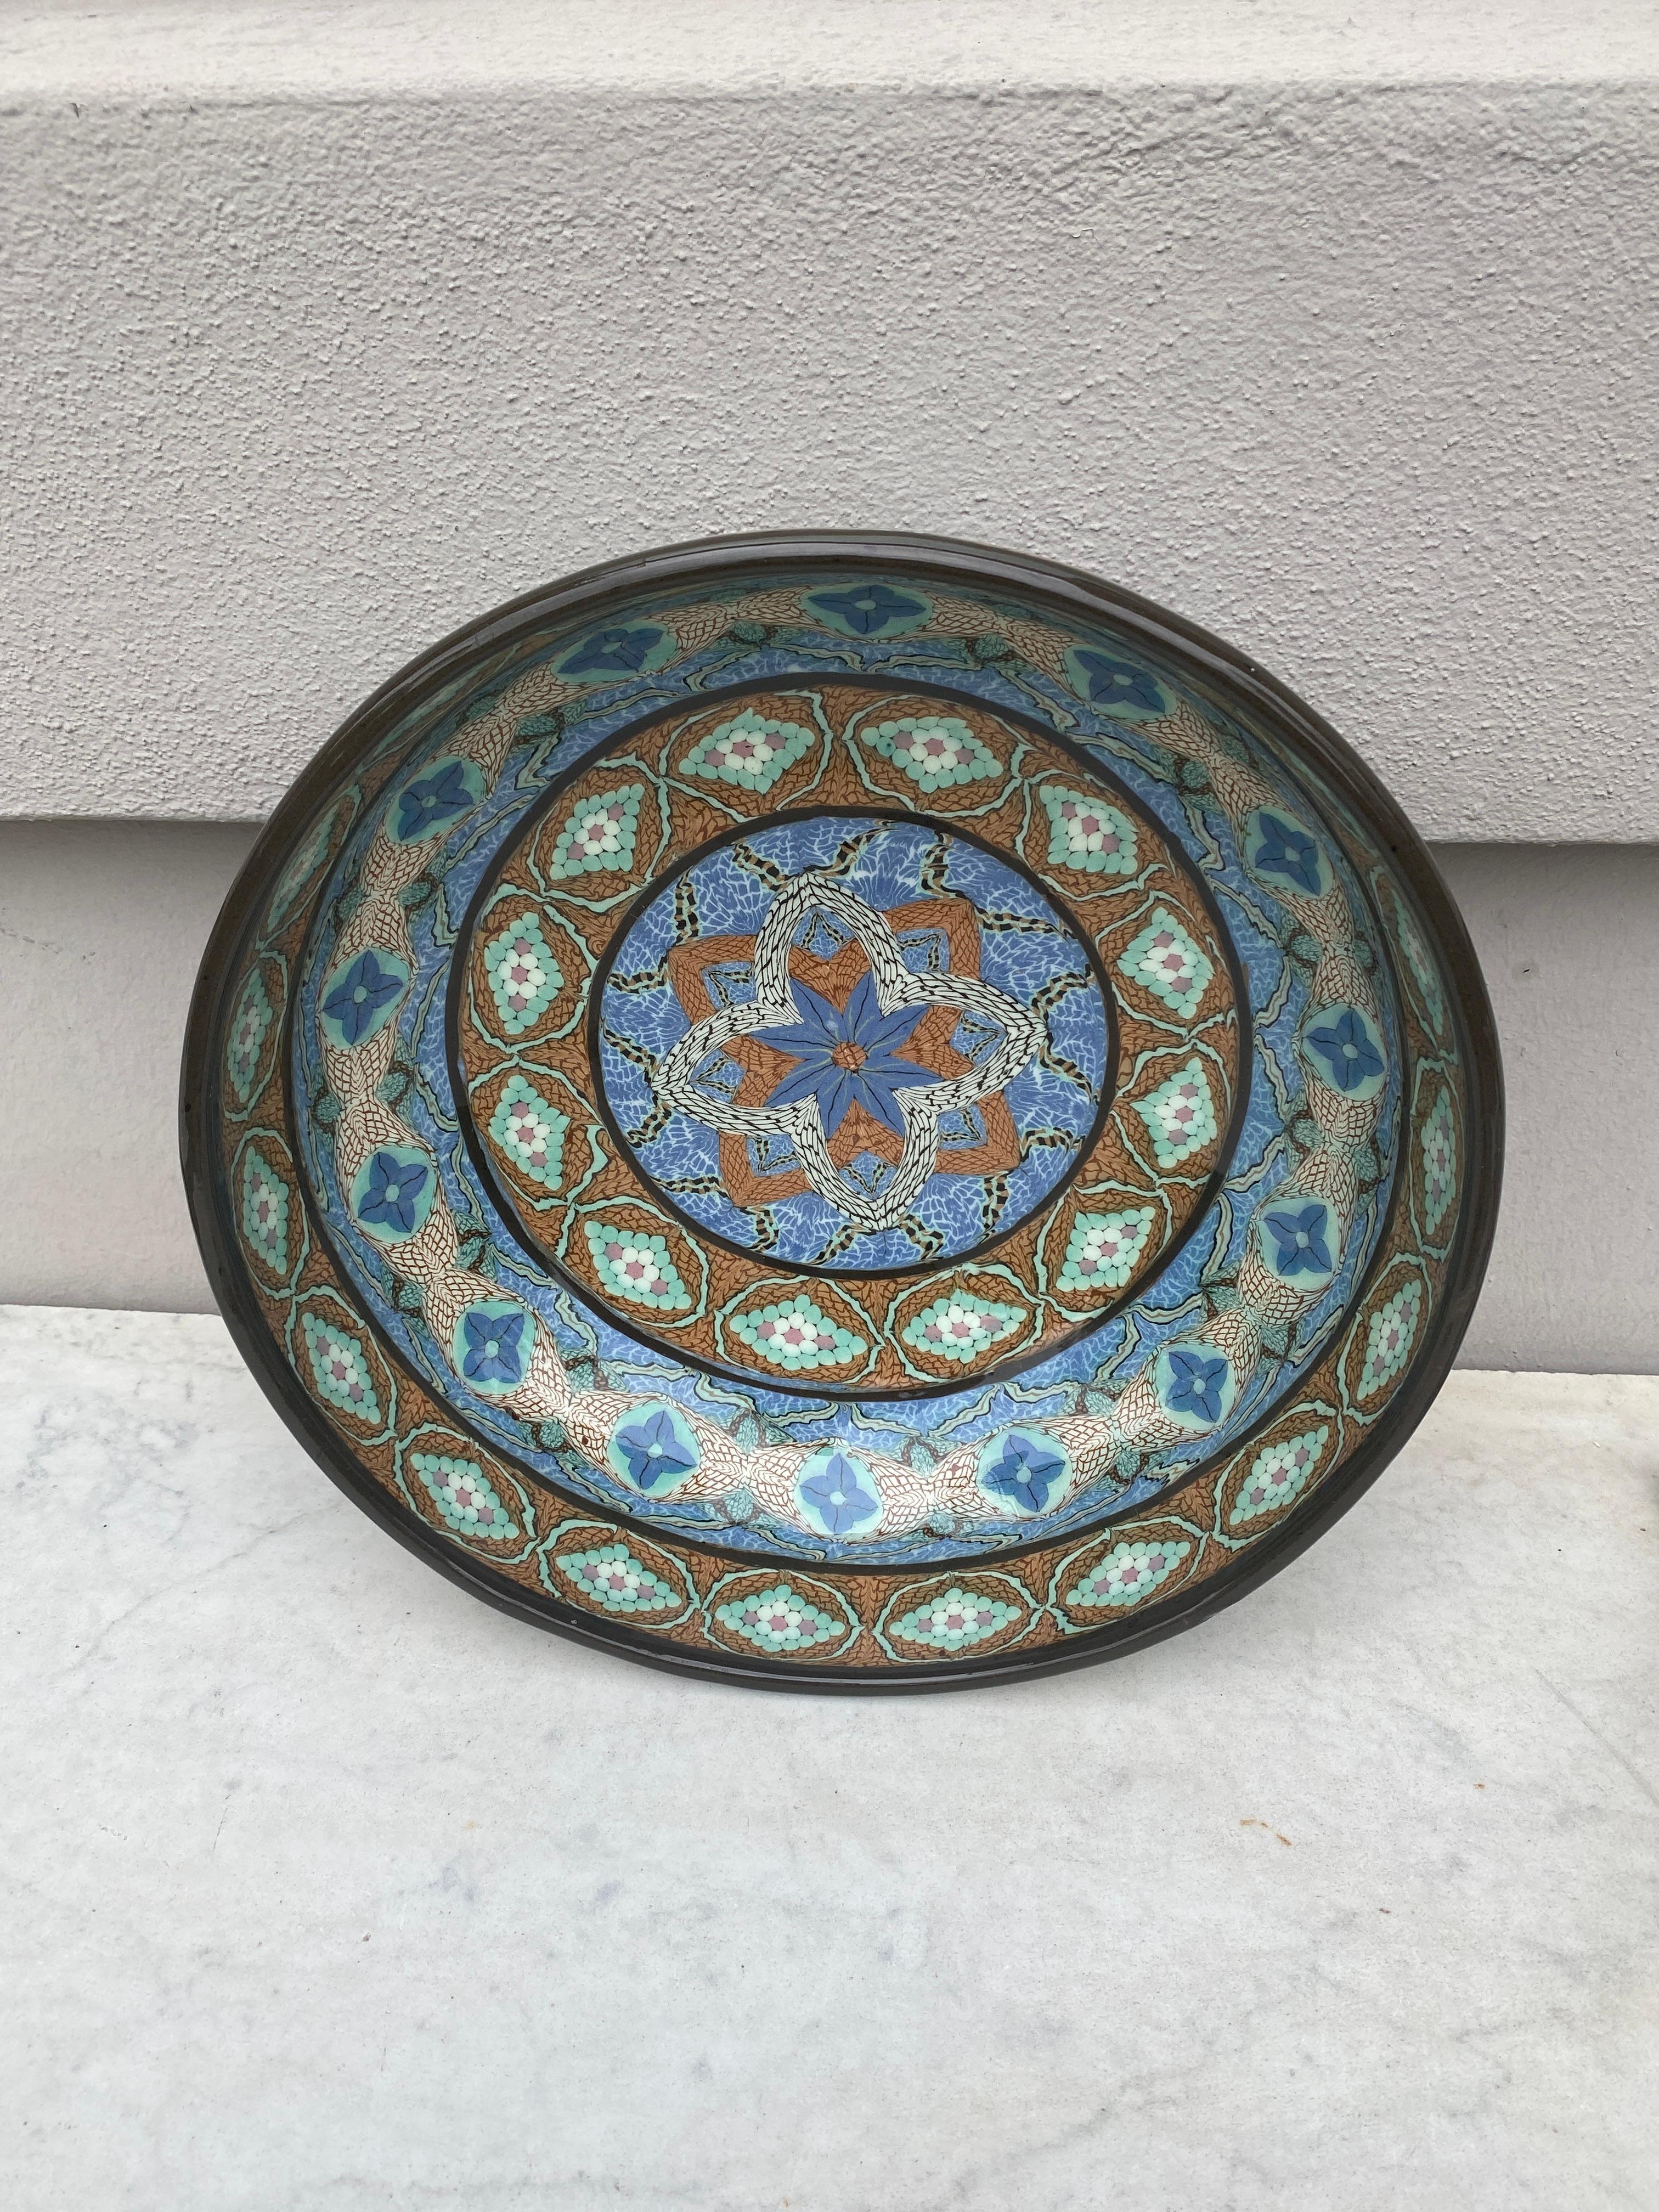 Große französische Mosaik-Keramikschale Gerbino Vallauris aus der Jahrhundertmitte.
Durchmesser / 12 Zoll.